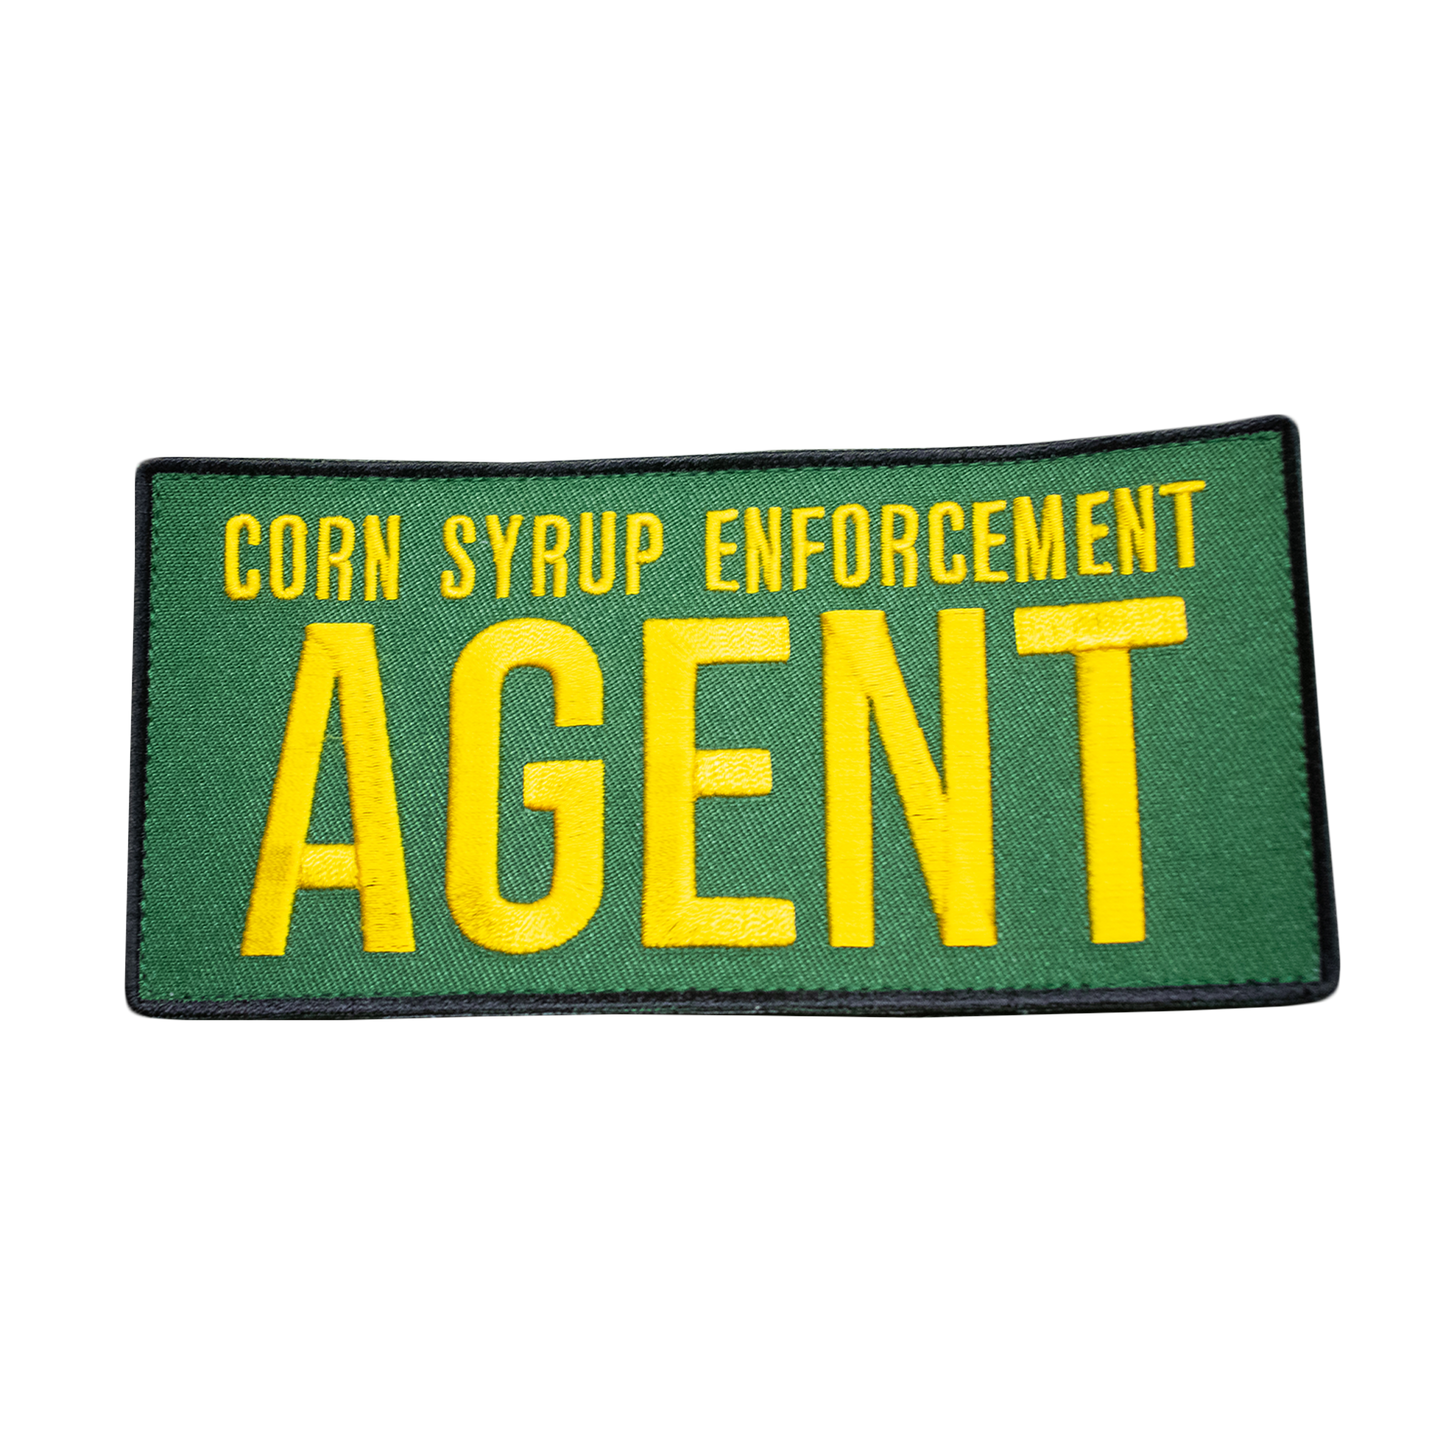 Corn Syrup Enforcement Agent